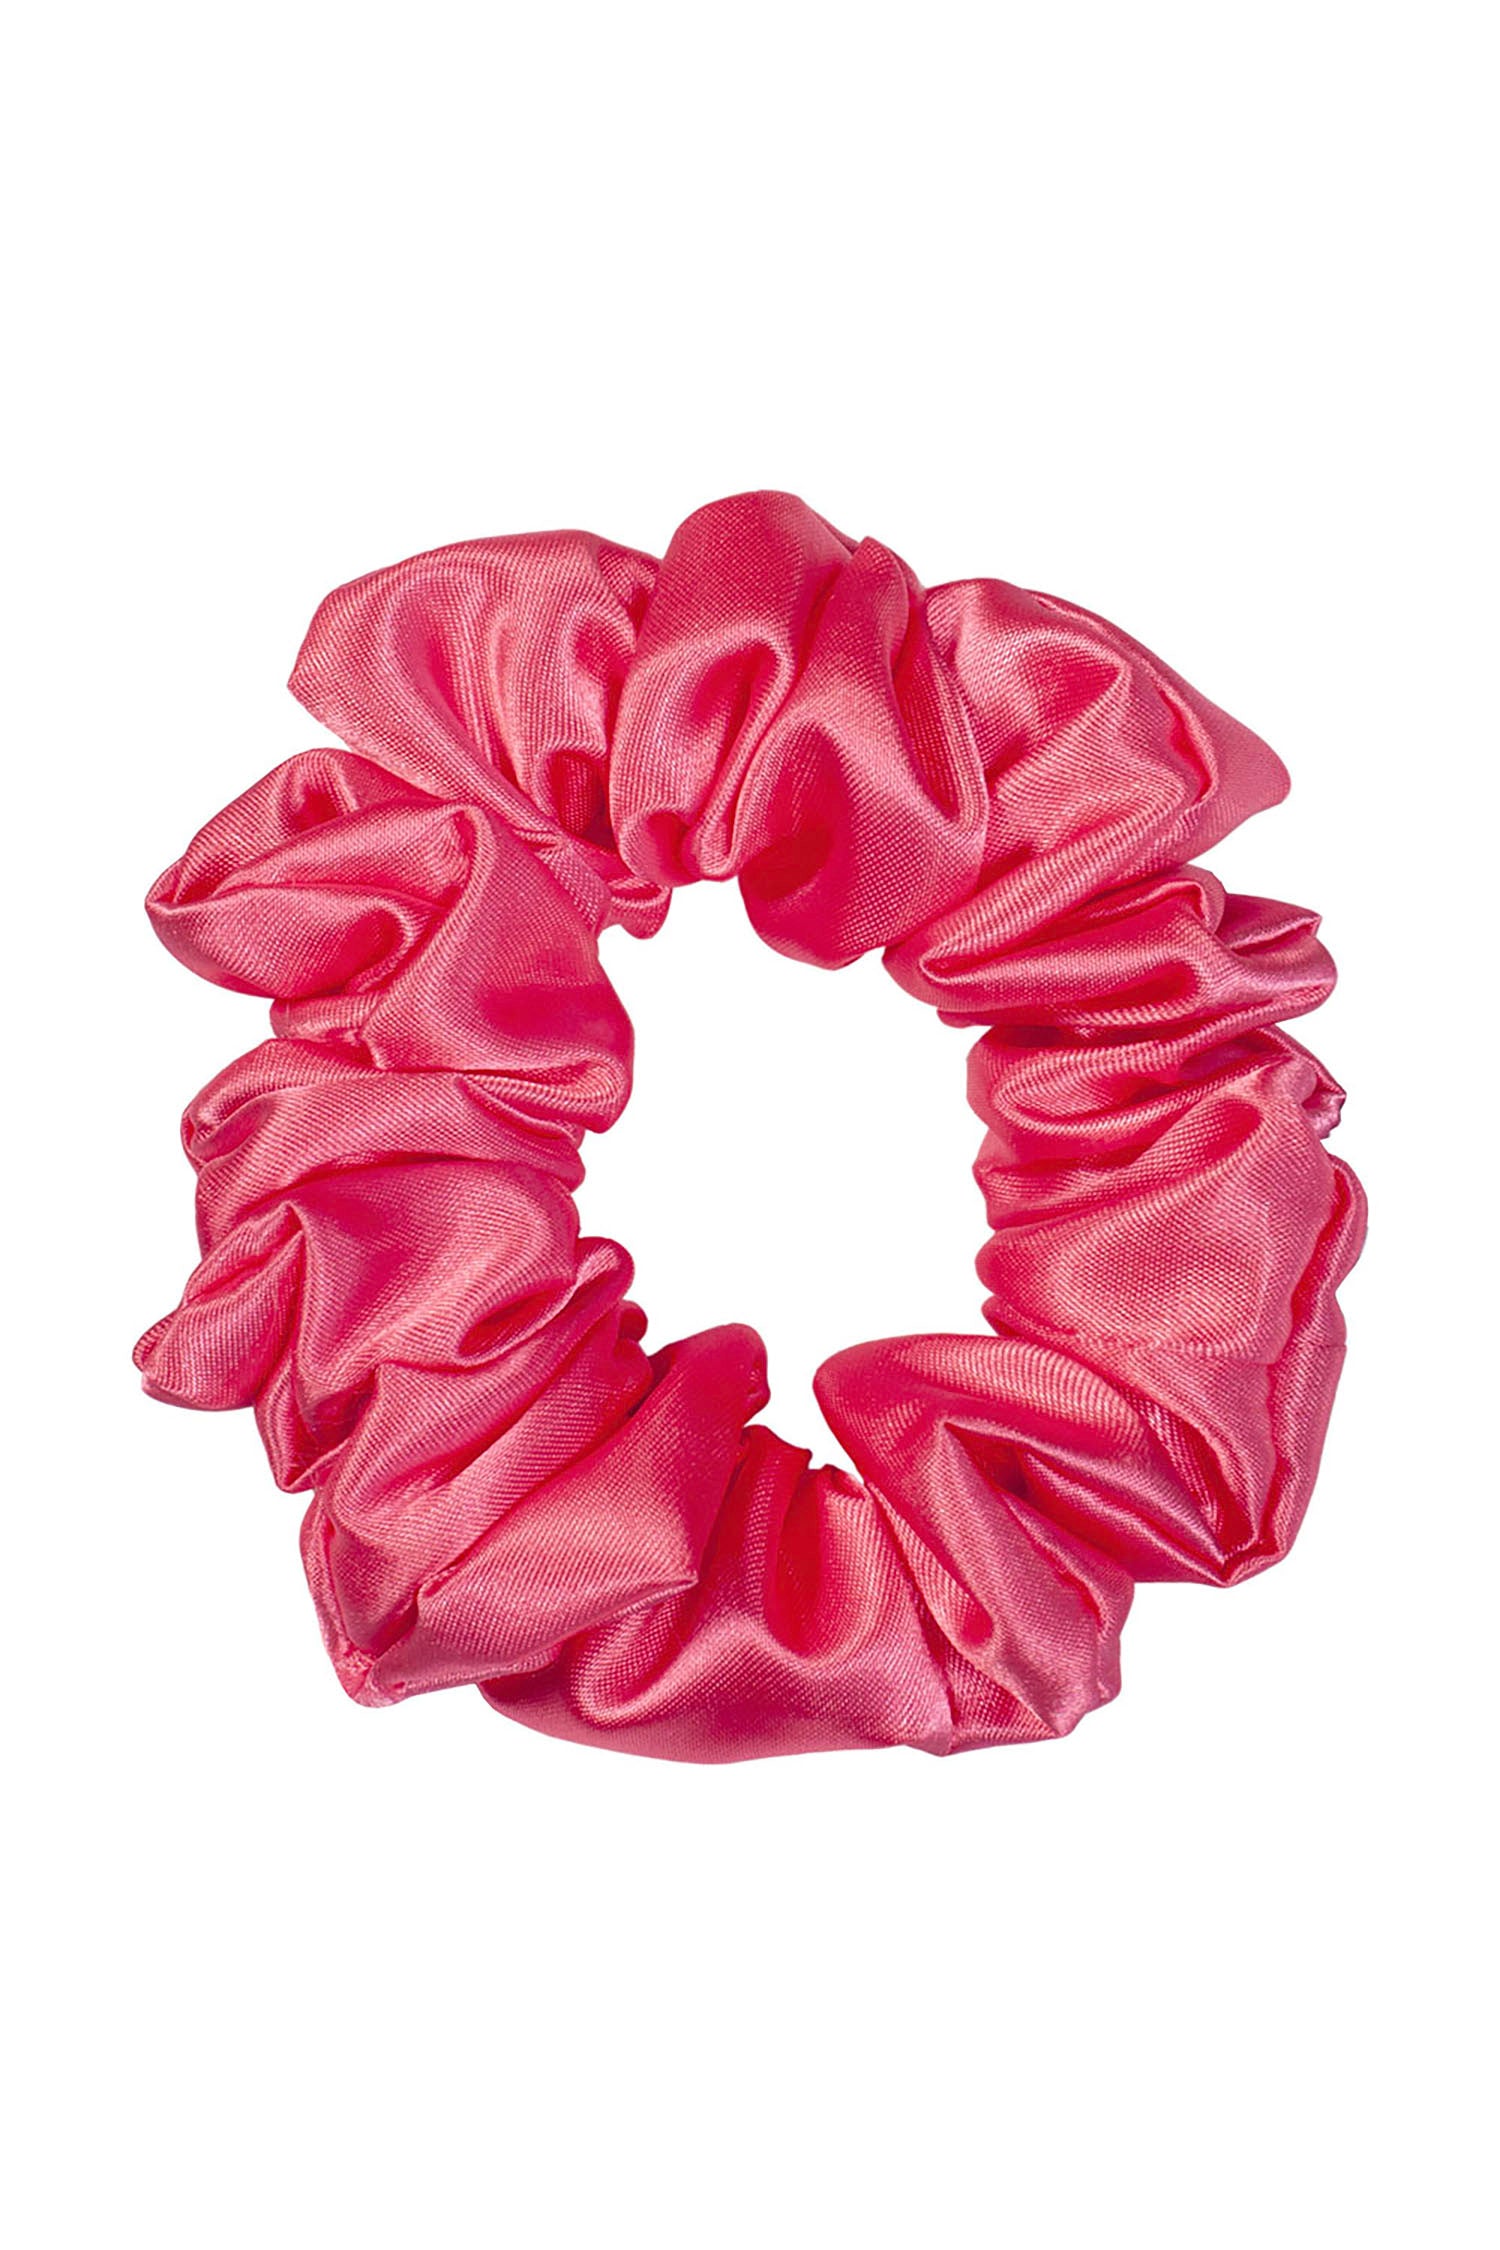 Scrunchie - raspberry pink satin